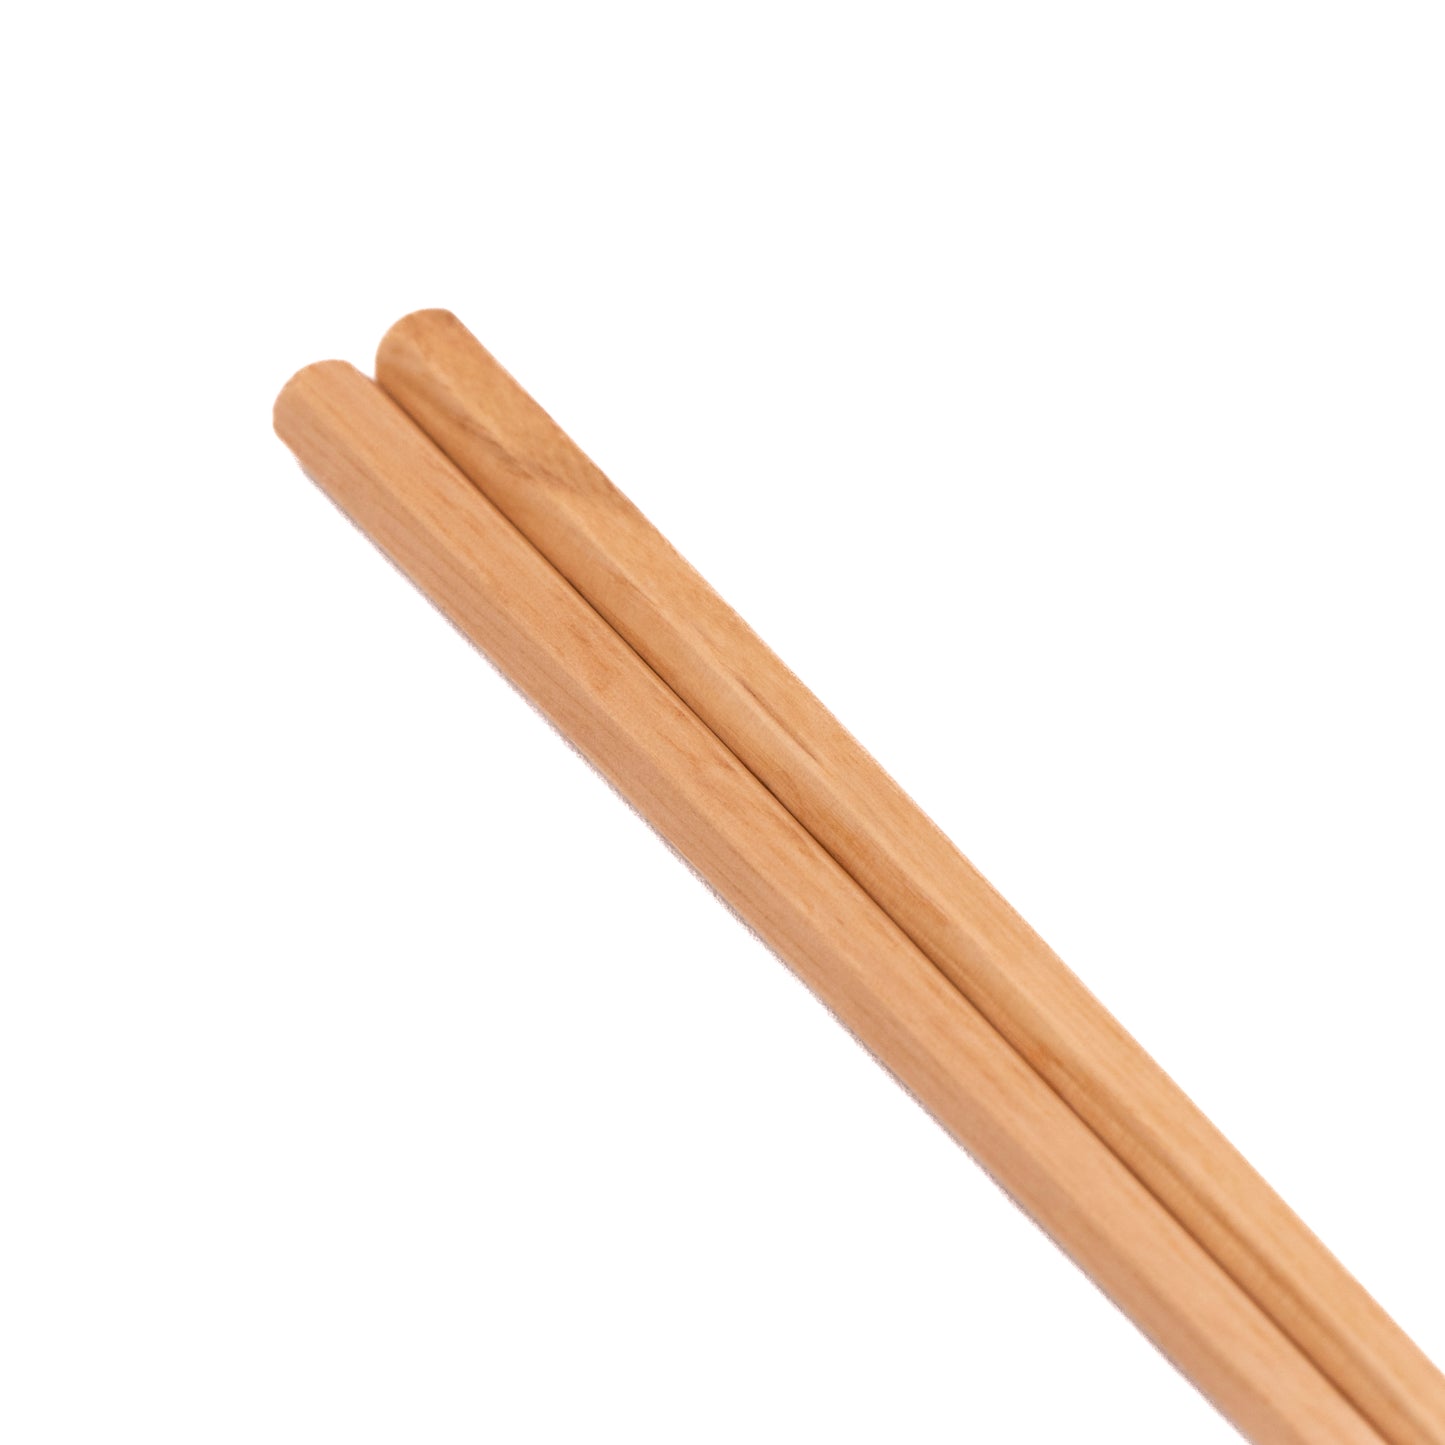 Wooden Hexagonal Chopsticks